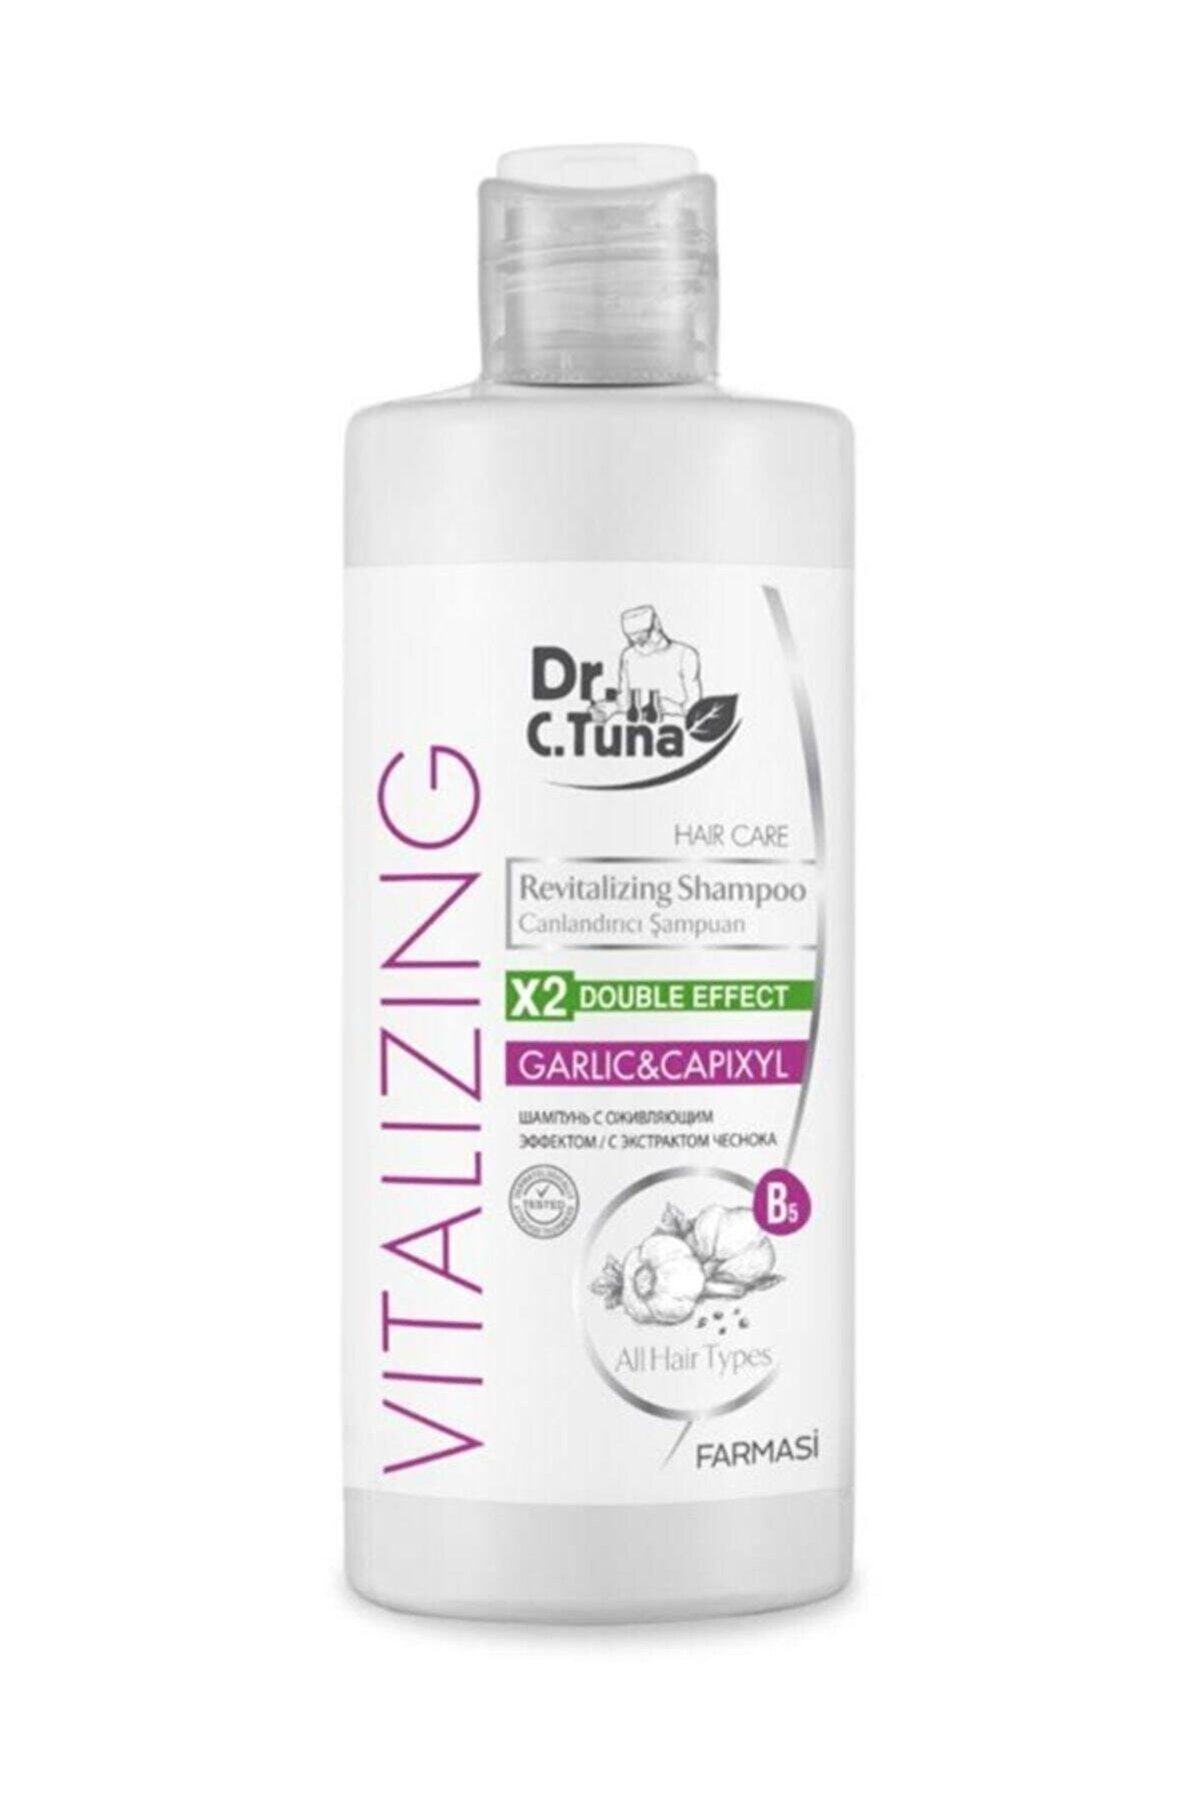 Farmasi Dr. C. Tuna Vitalizing Tüm Saçlar için Canlandırıcı Sarımsaklı Şampuan 225 ml